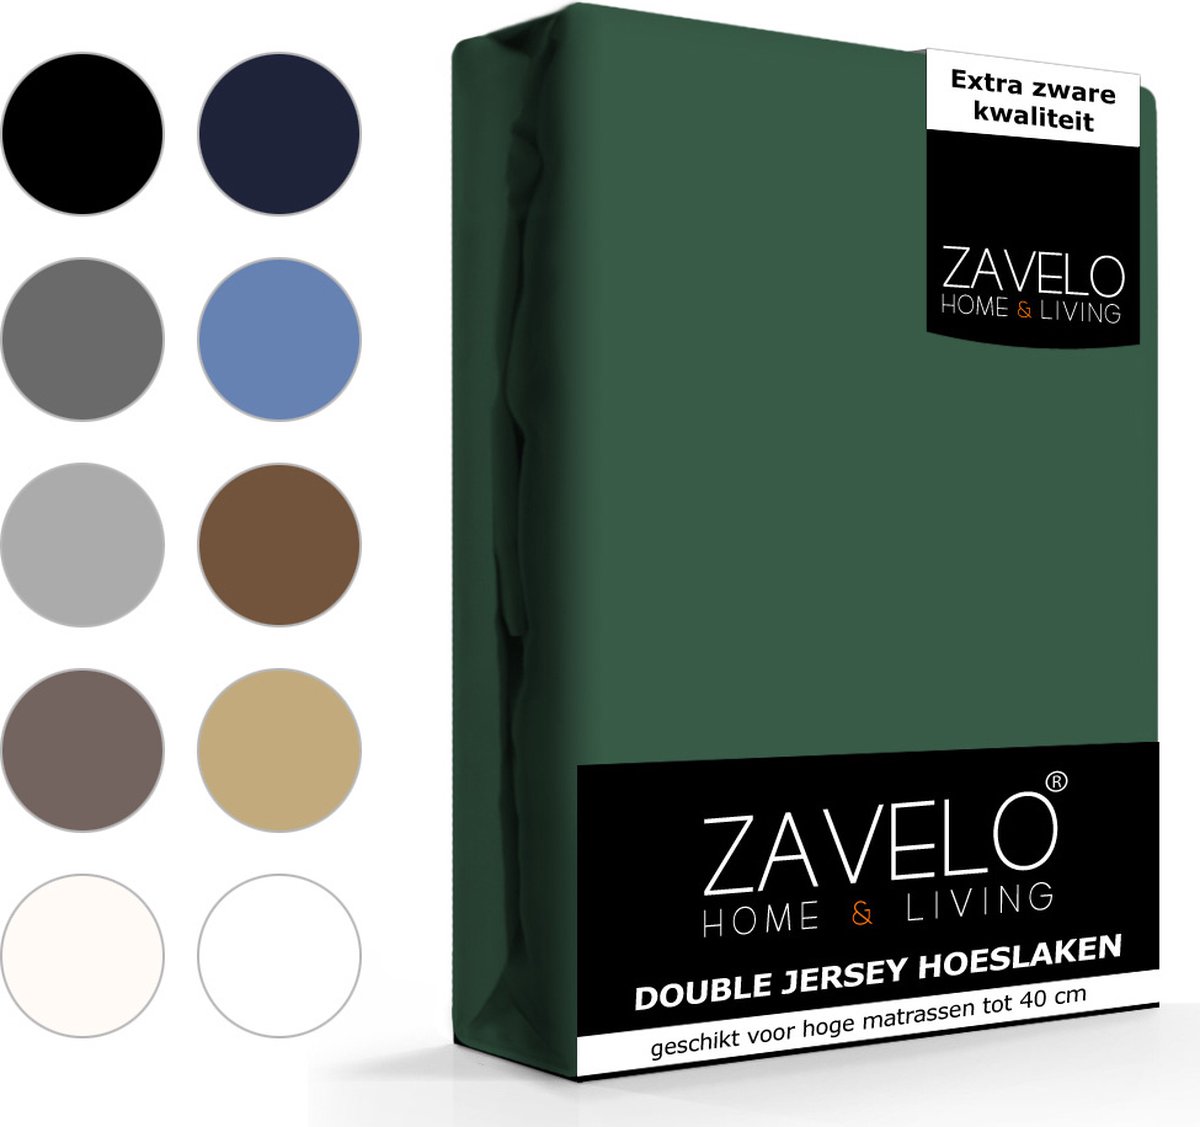 Slaaptextiel Zavelo Double Jersey Hoeslaken-1-persoons (90x200 Cm) - Groen